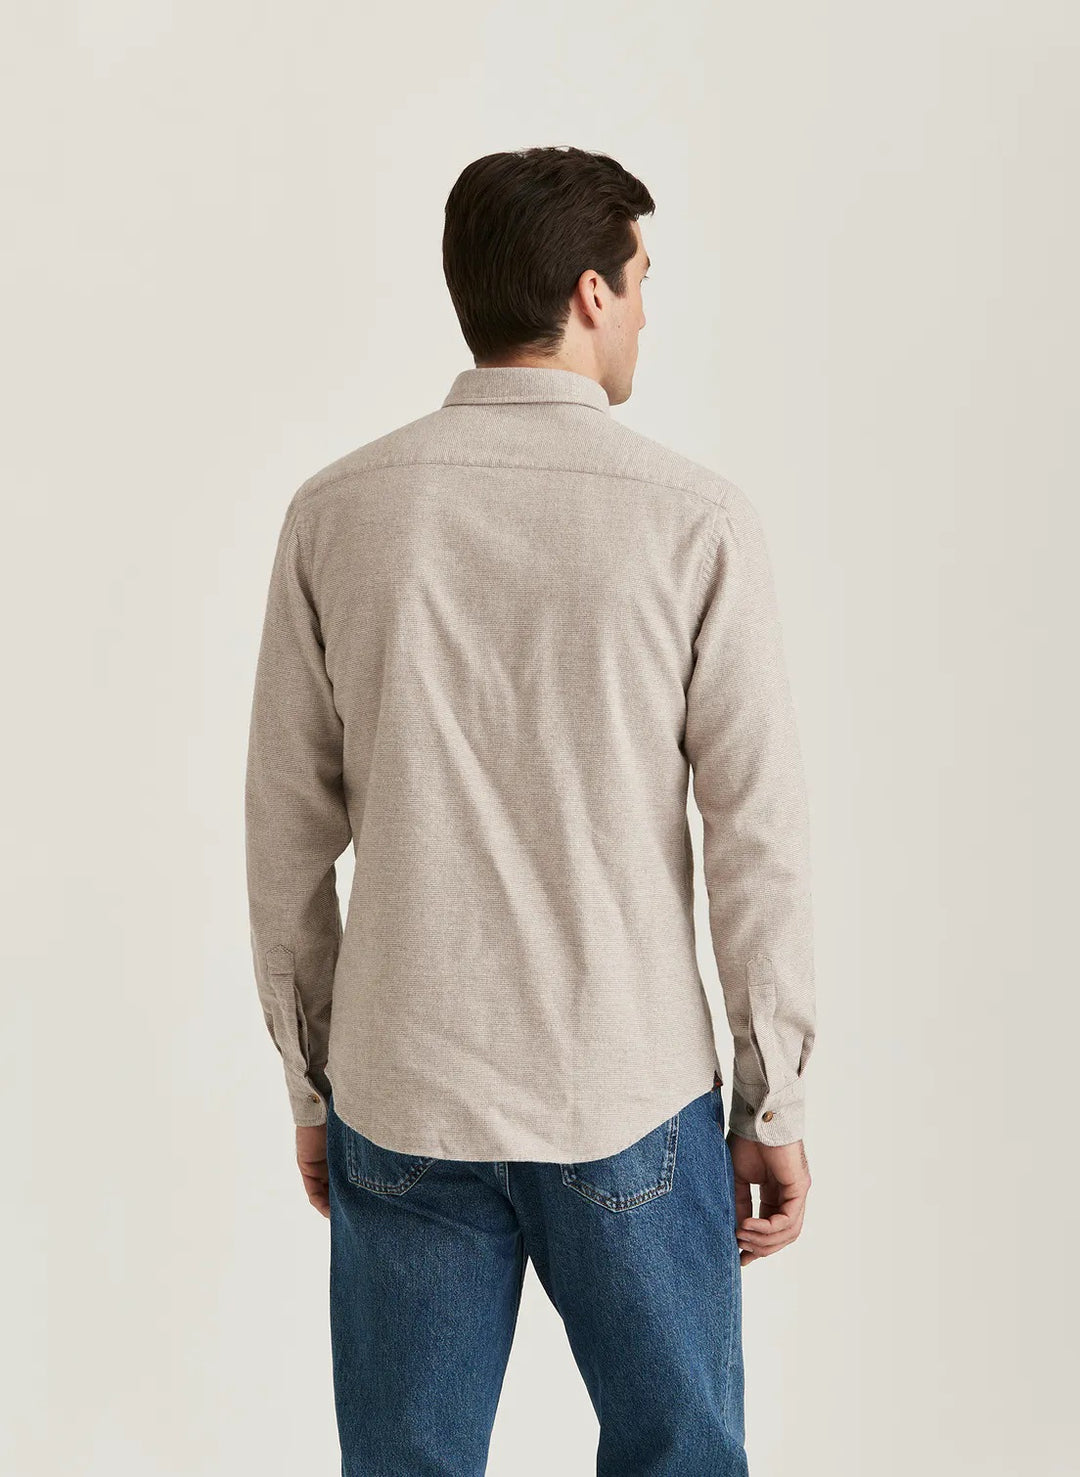 Flannel Check Shirt - Slim Fit  Khaki